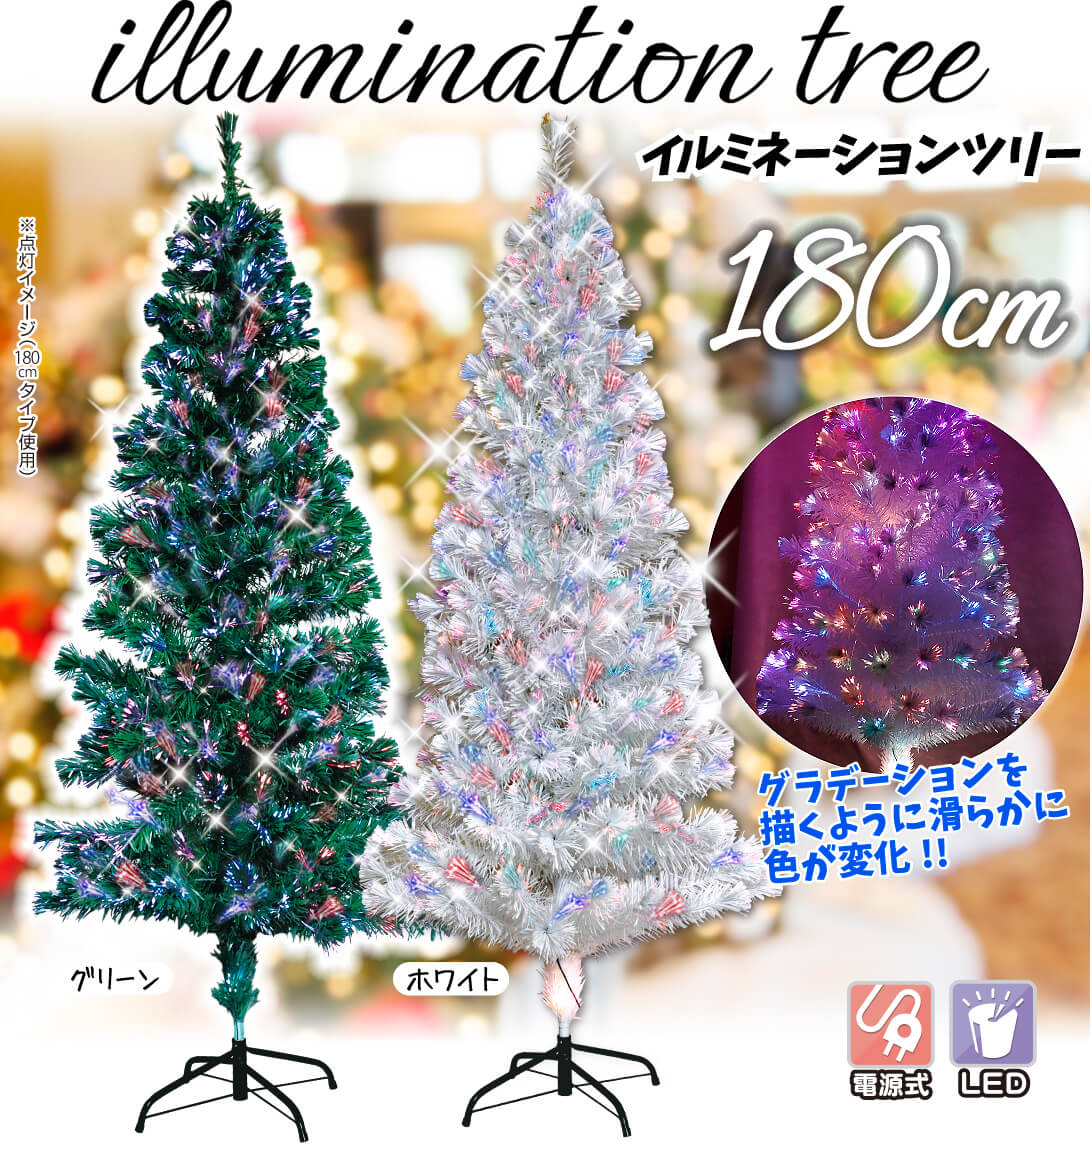 クリスマスツリー 180cm ファイバーツリー RGBライト付き 